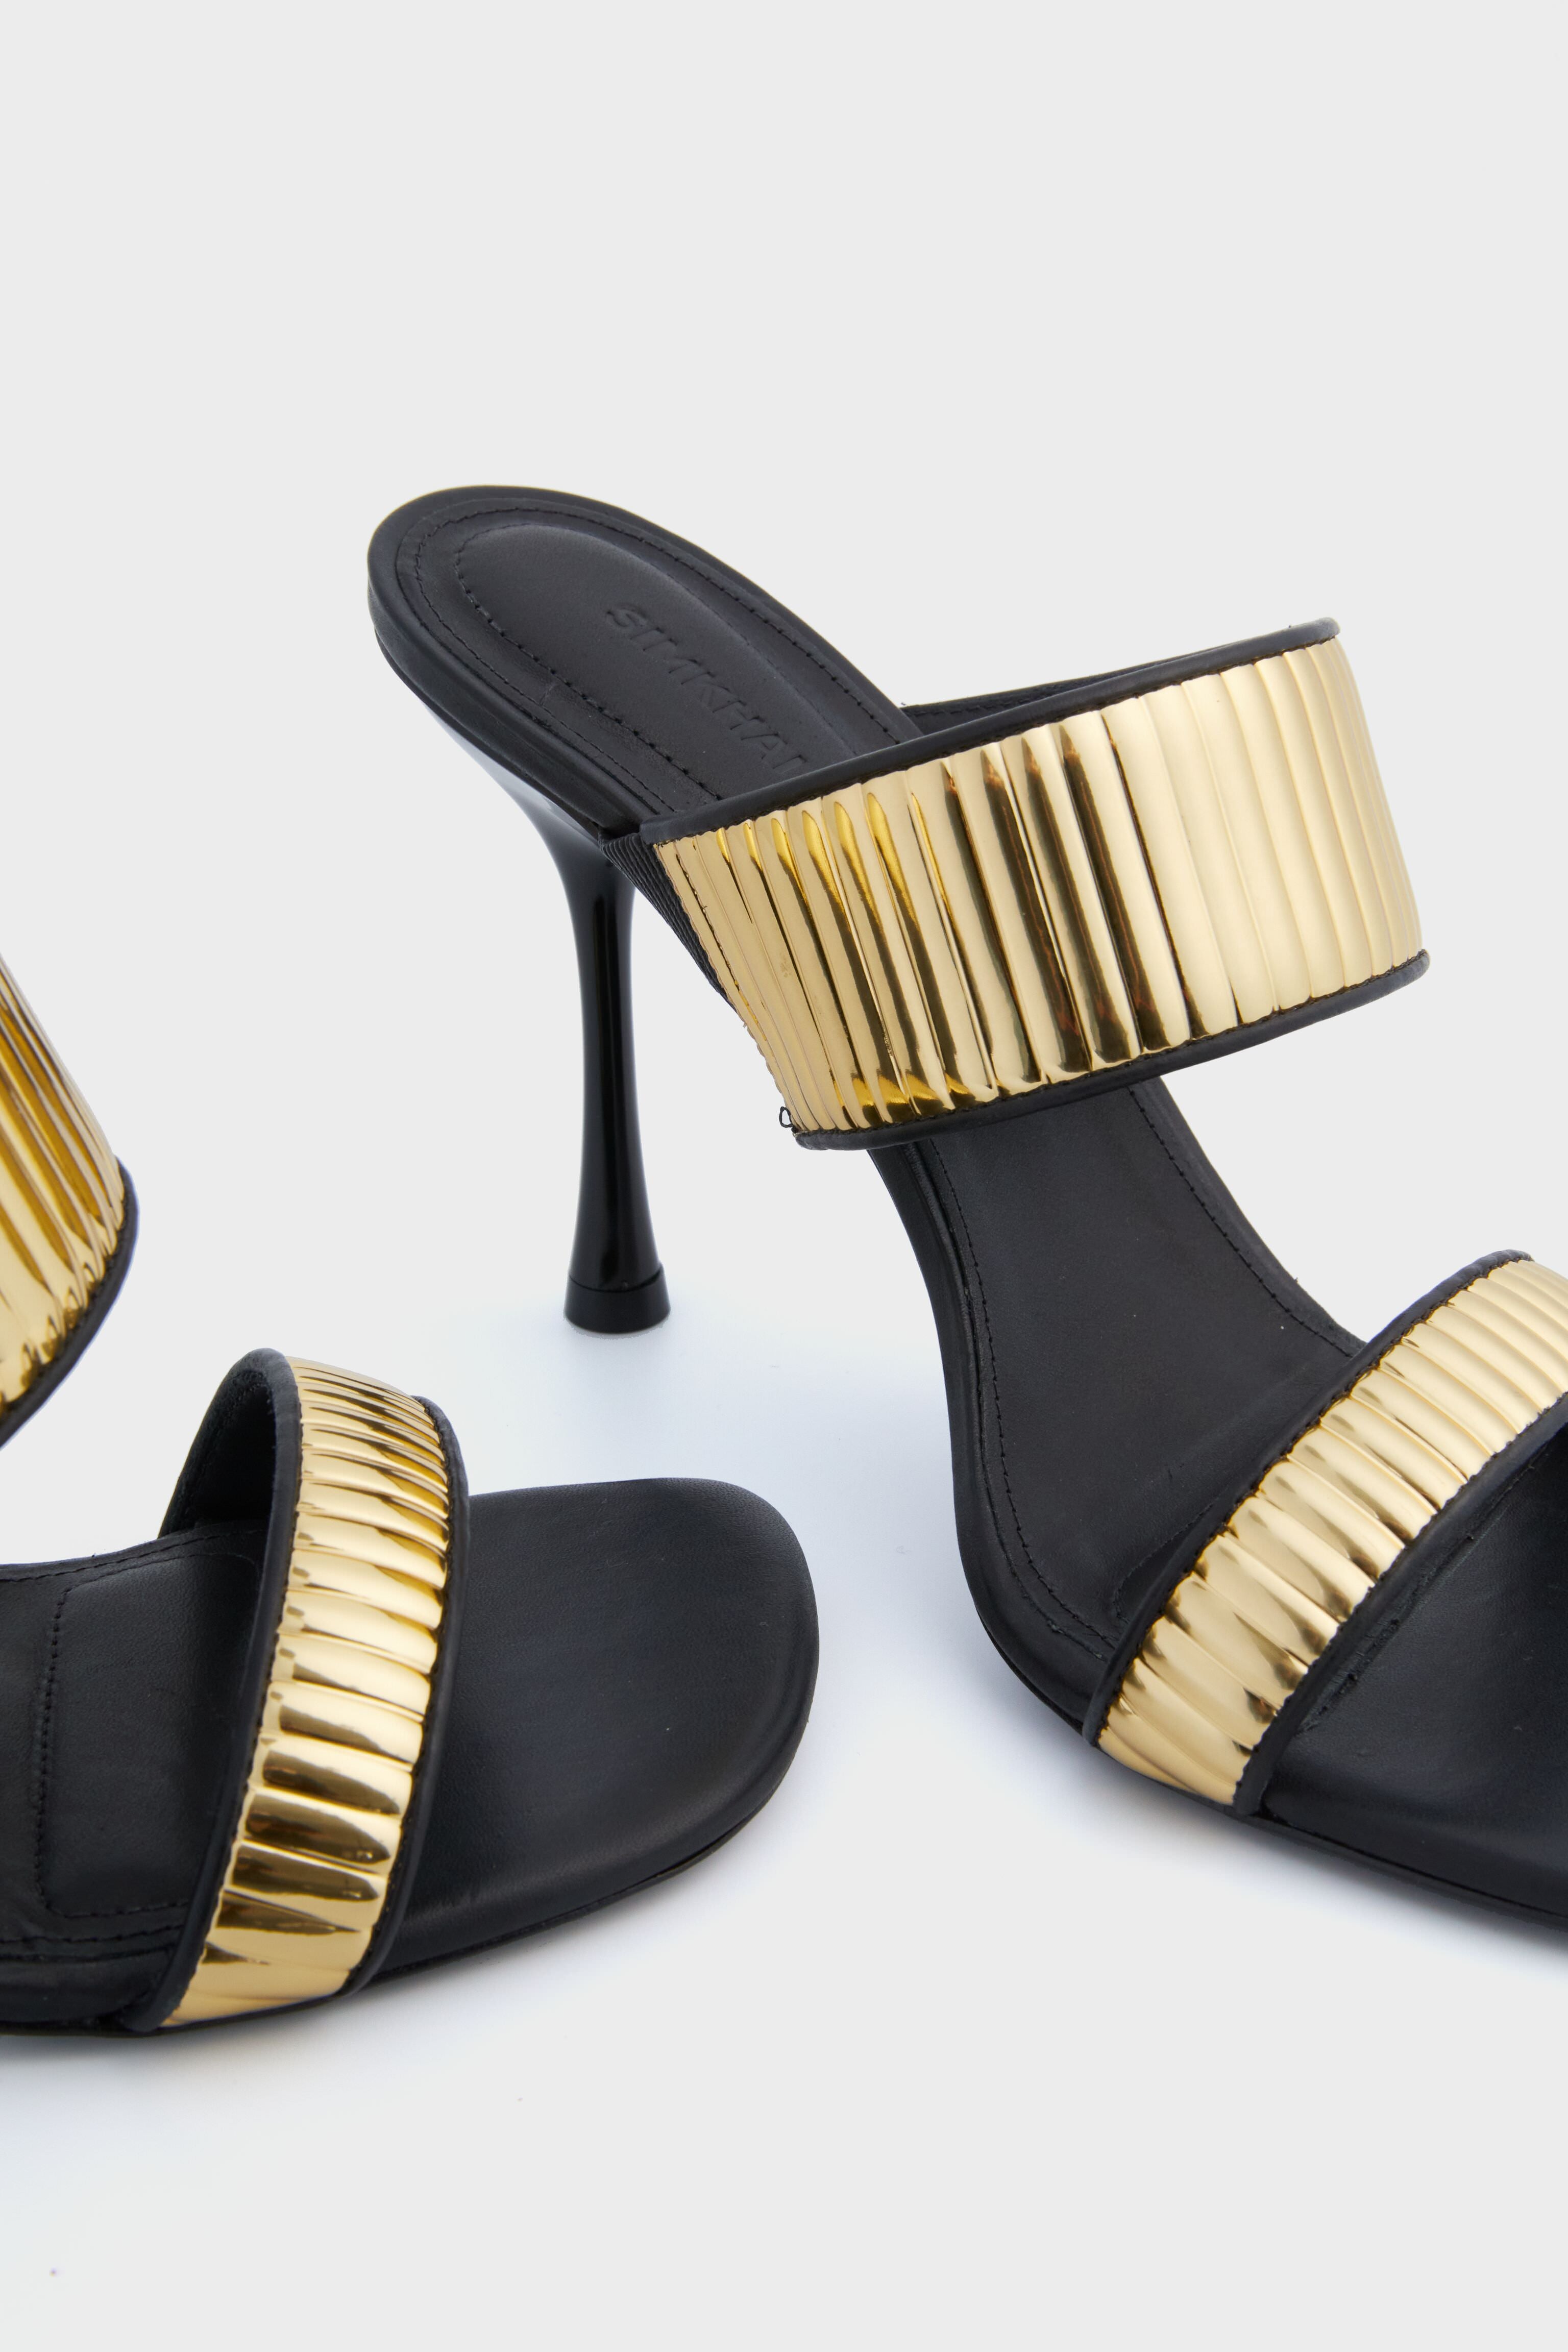 Nyle Collection Women Black, Gold Heels - Buy Nyle Collection Women Black, Gold  Heels Online at Best Price - Shop Online for Footwears in India |  Flipkart.com